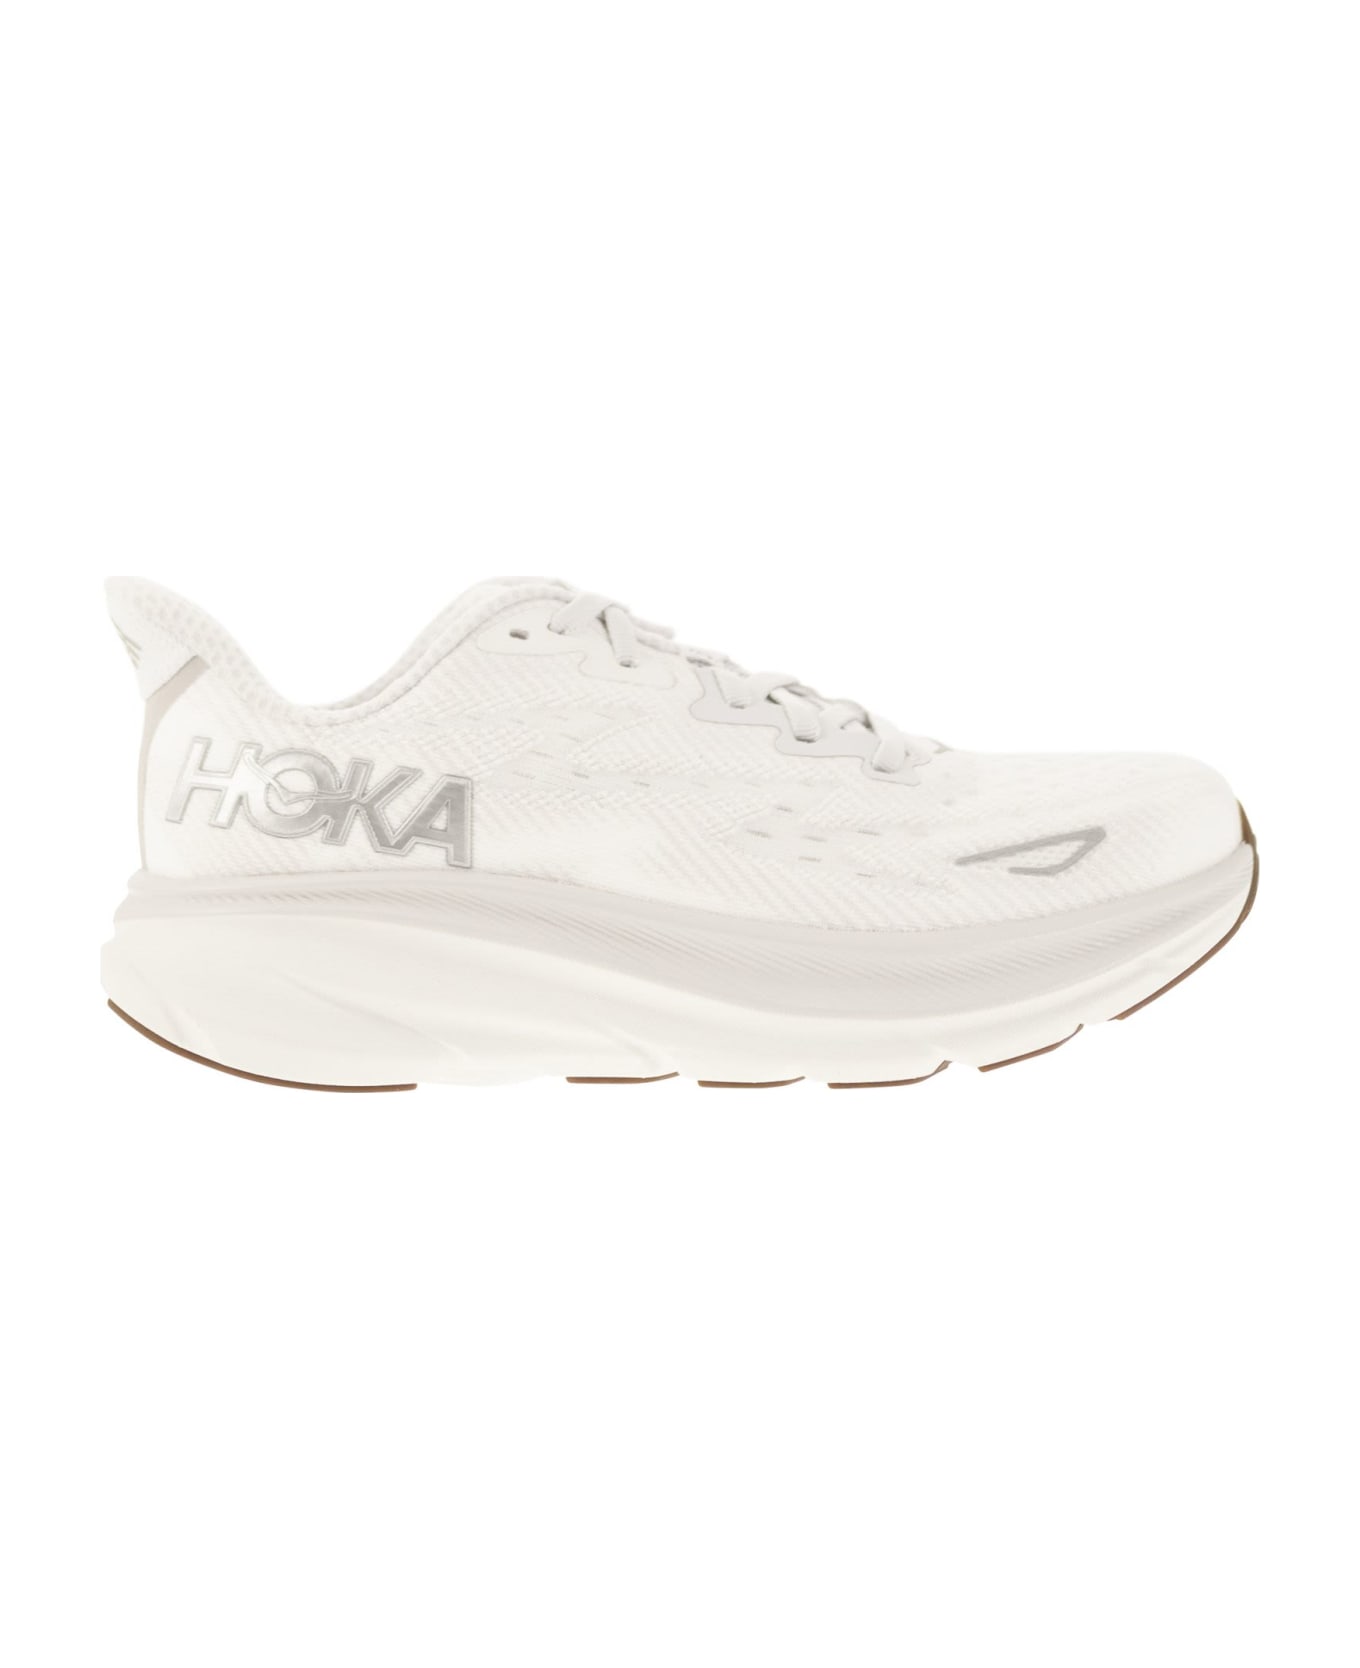 Hoka Clifton 9 - Breathable Sports Shoe - White スニーカー